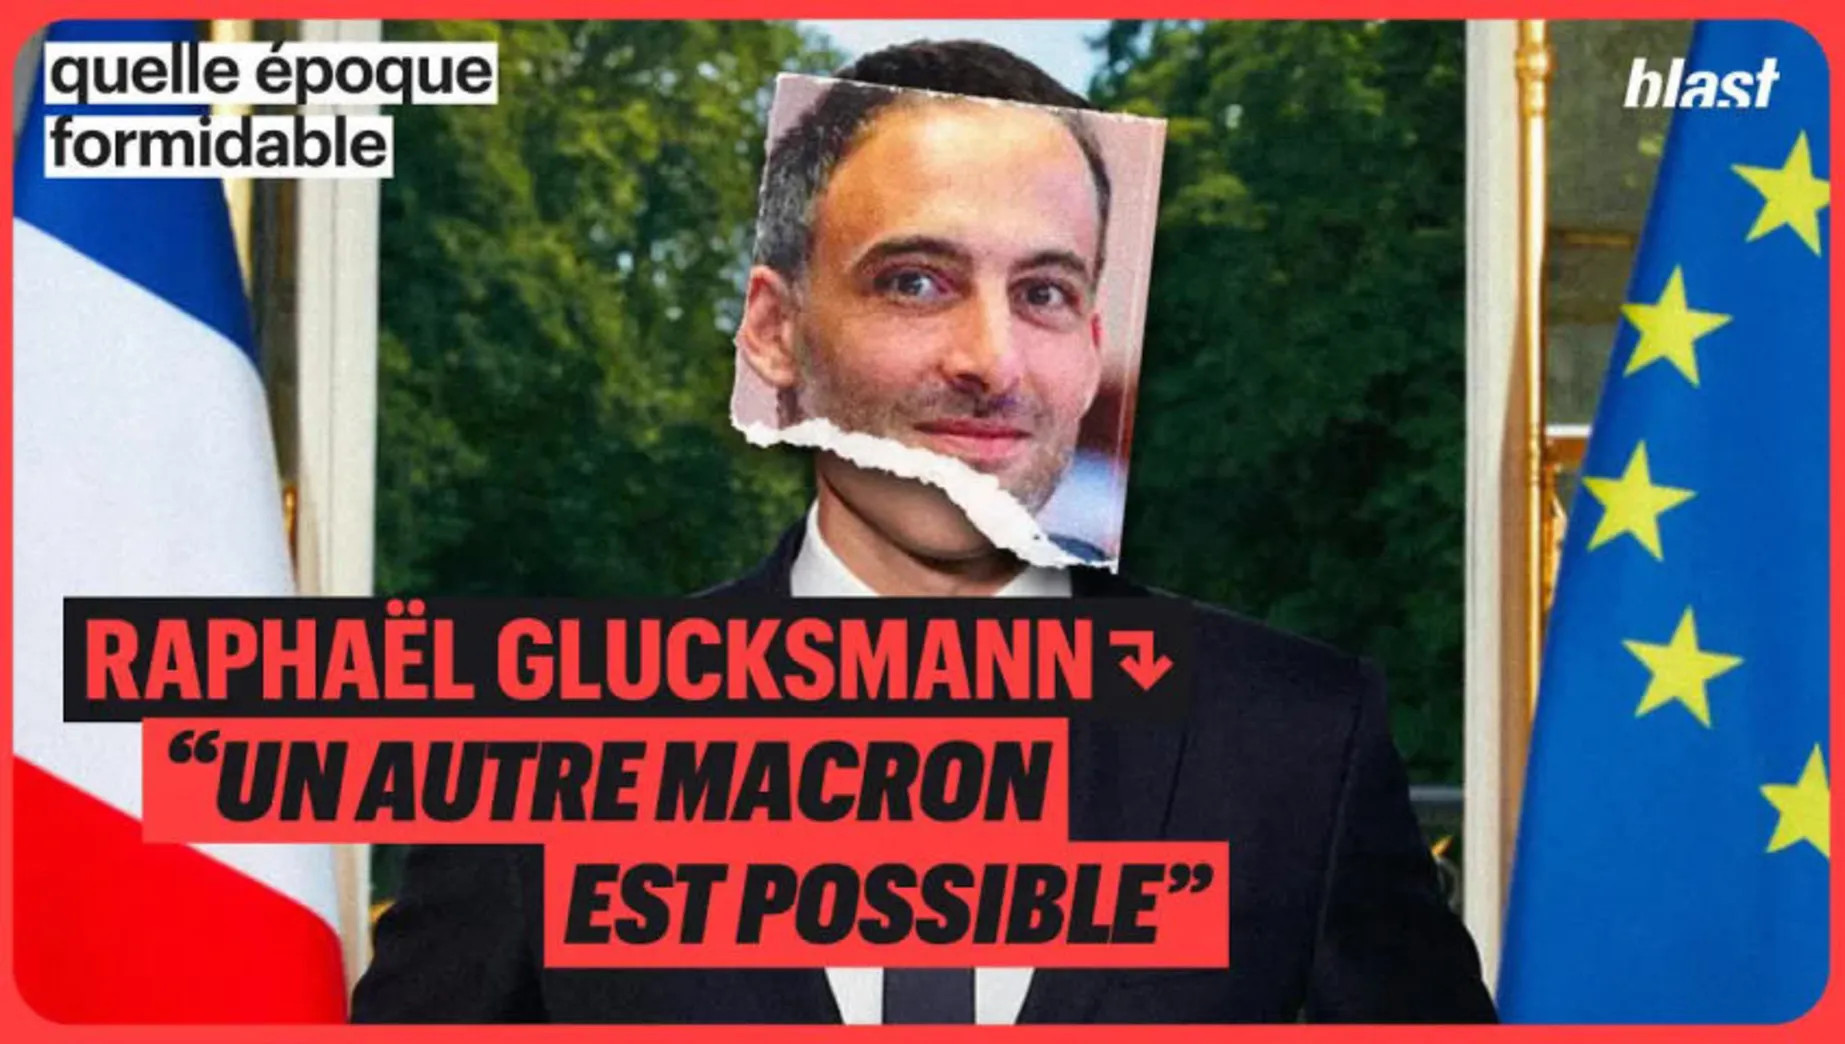 Raphaël Glucksmann : "Un autre Macron est possible"